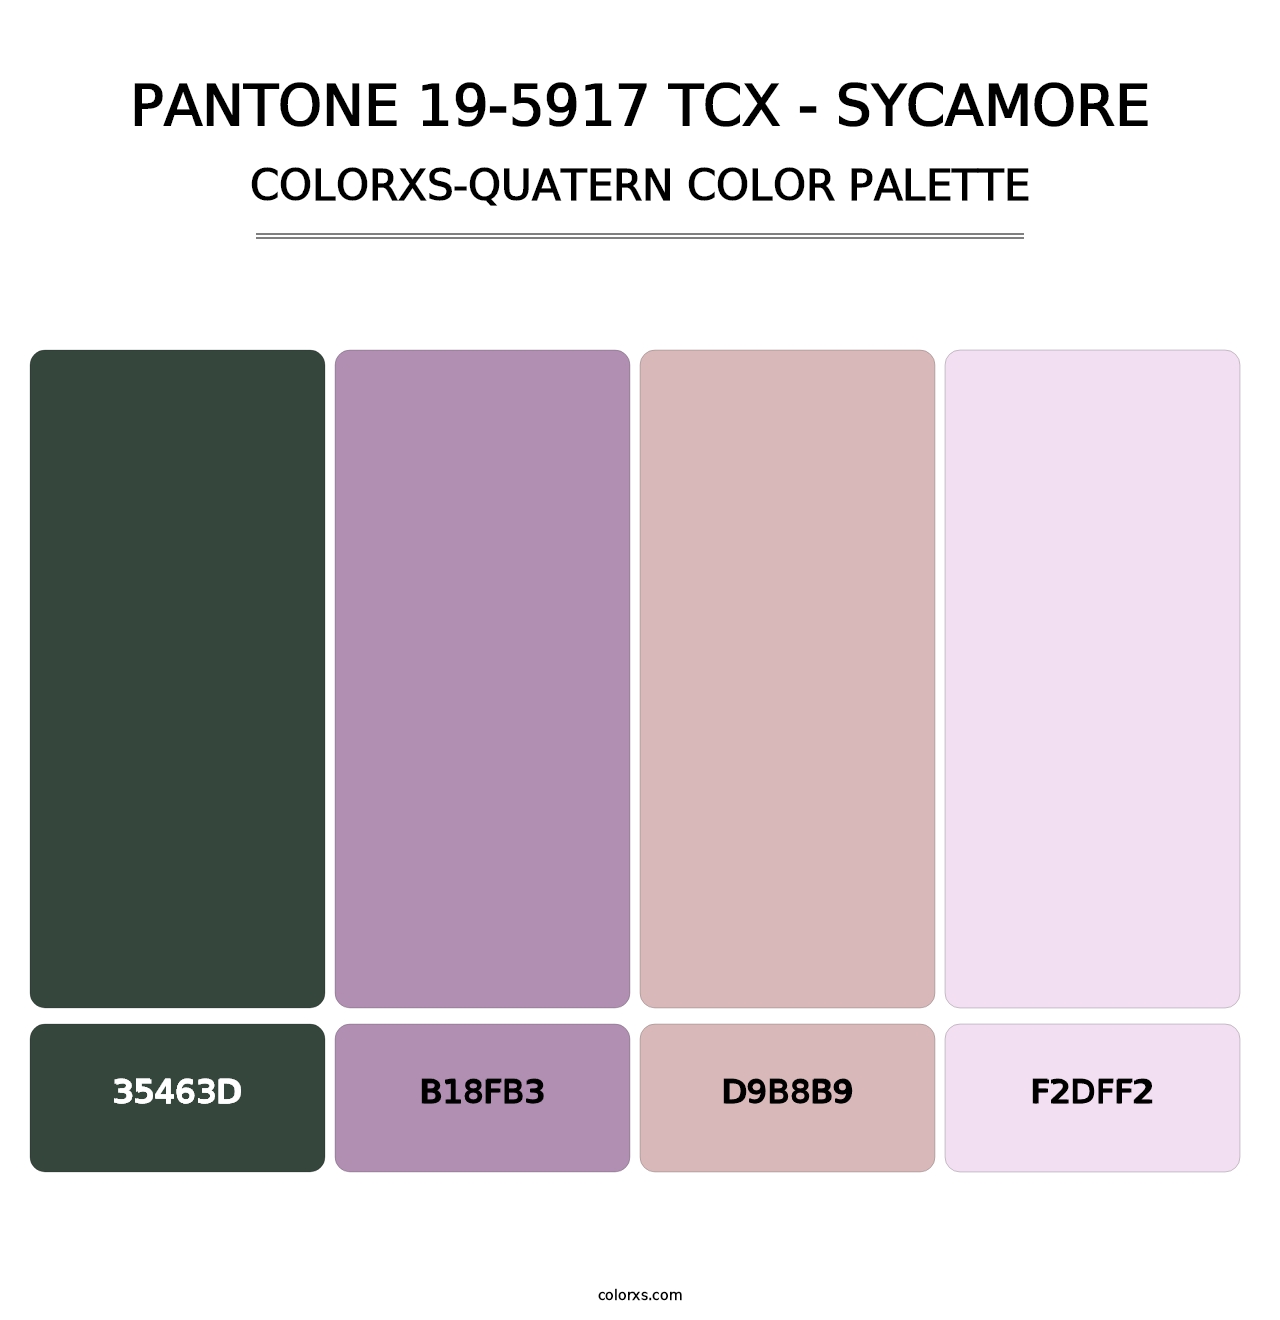 PANTONE 19-5917 TCX - Sycamore - Colorxs Quatern Palette